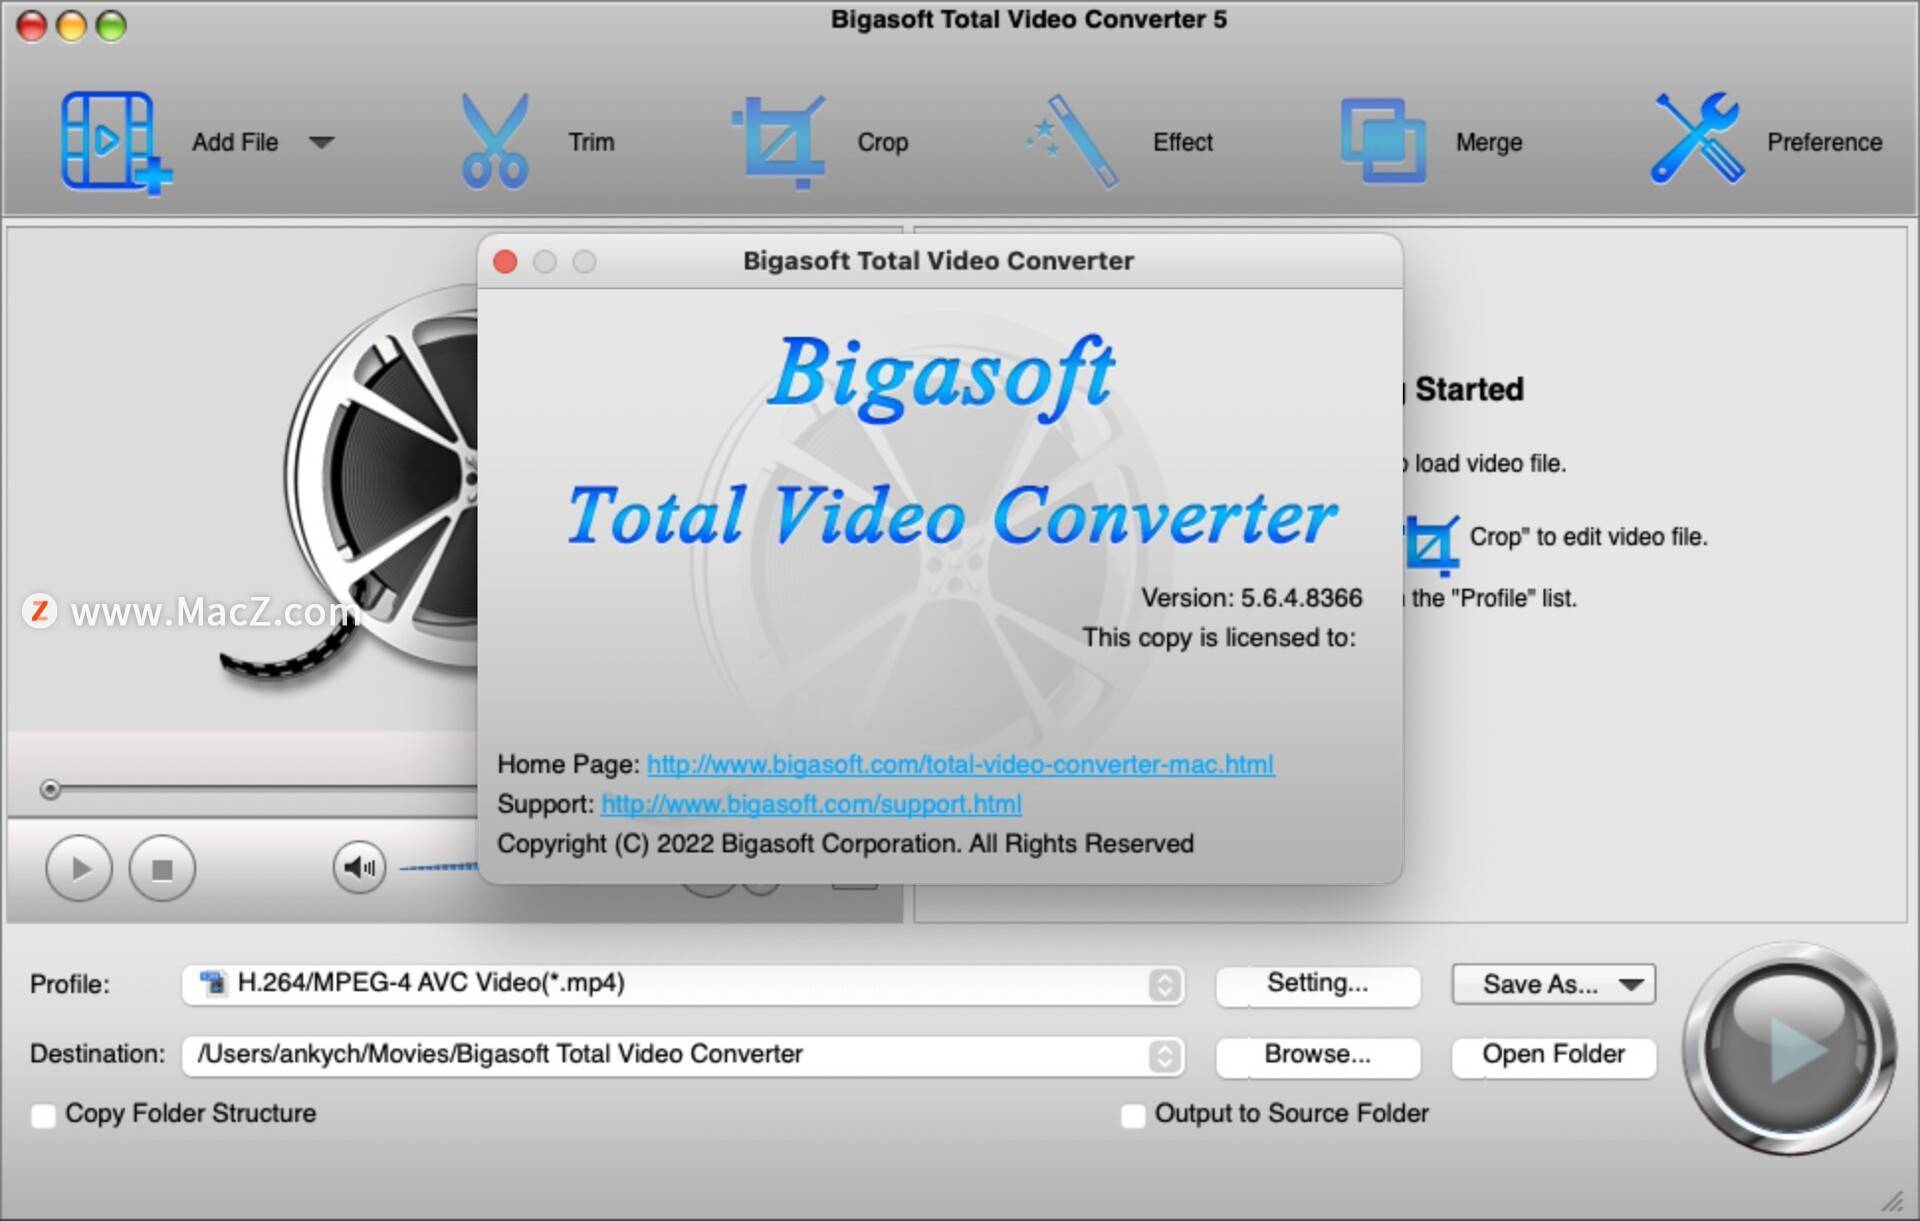 华为手机更改mac地址吗
:视频转换器Bigasoft Total Video Converter永久激活版软件介绍v5.6.4